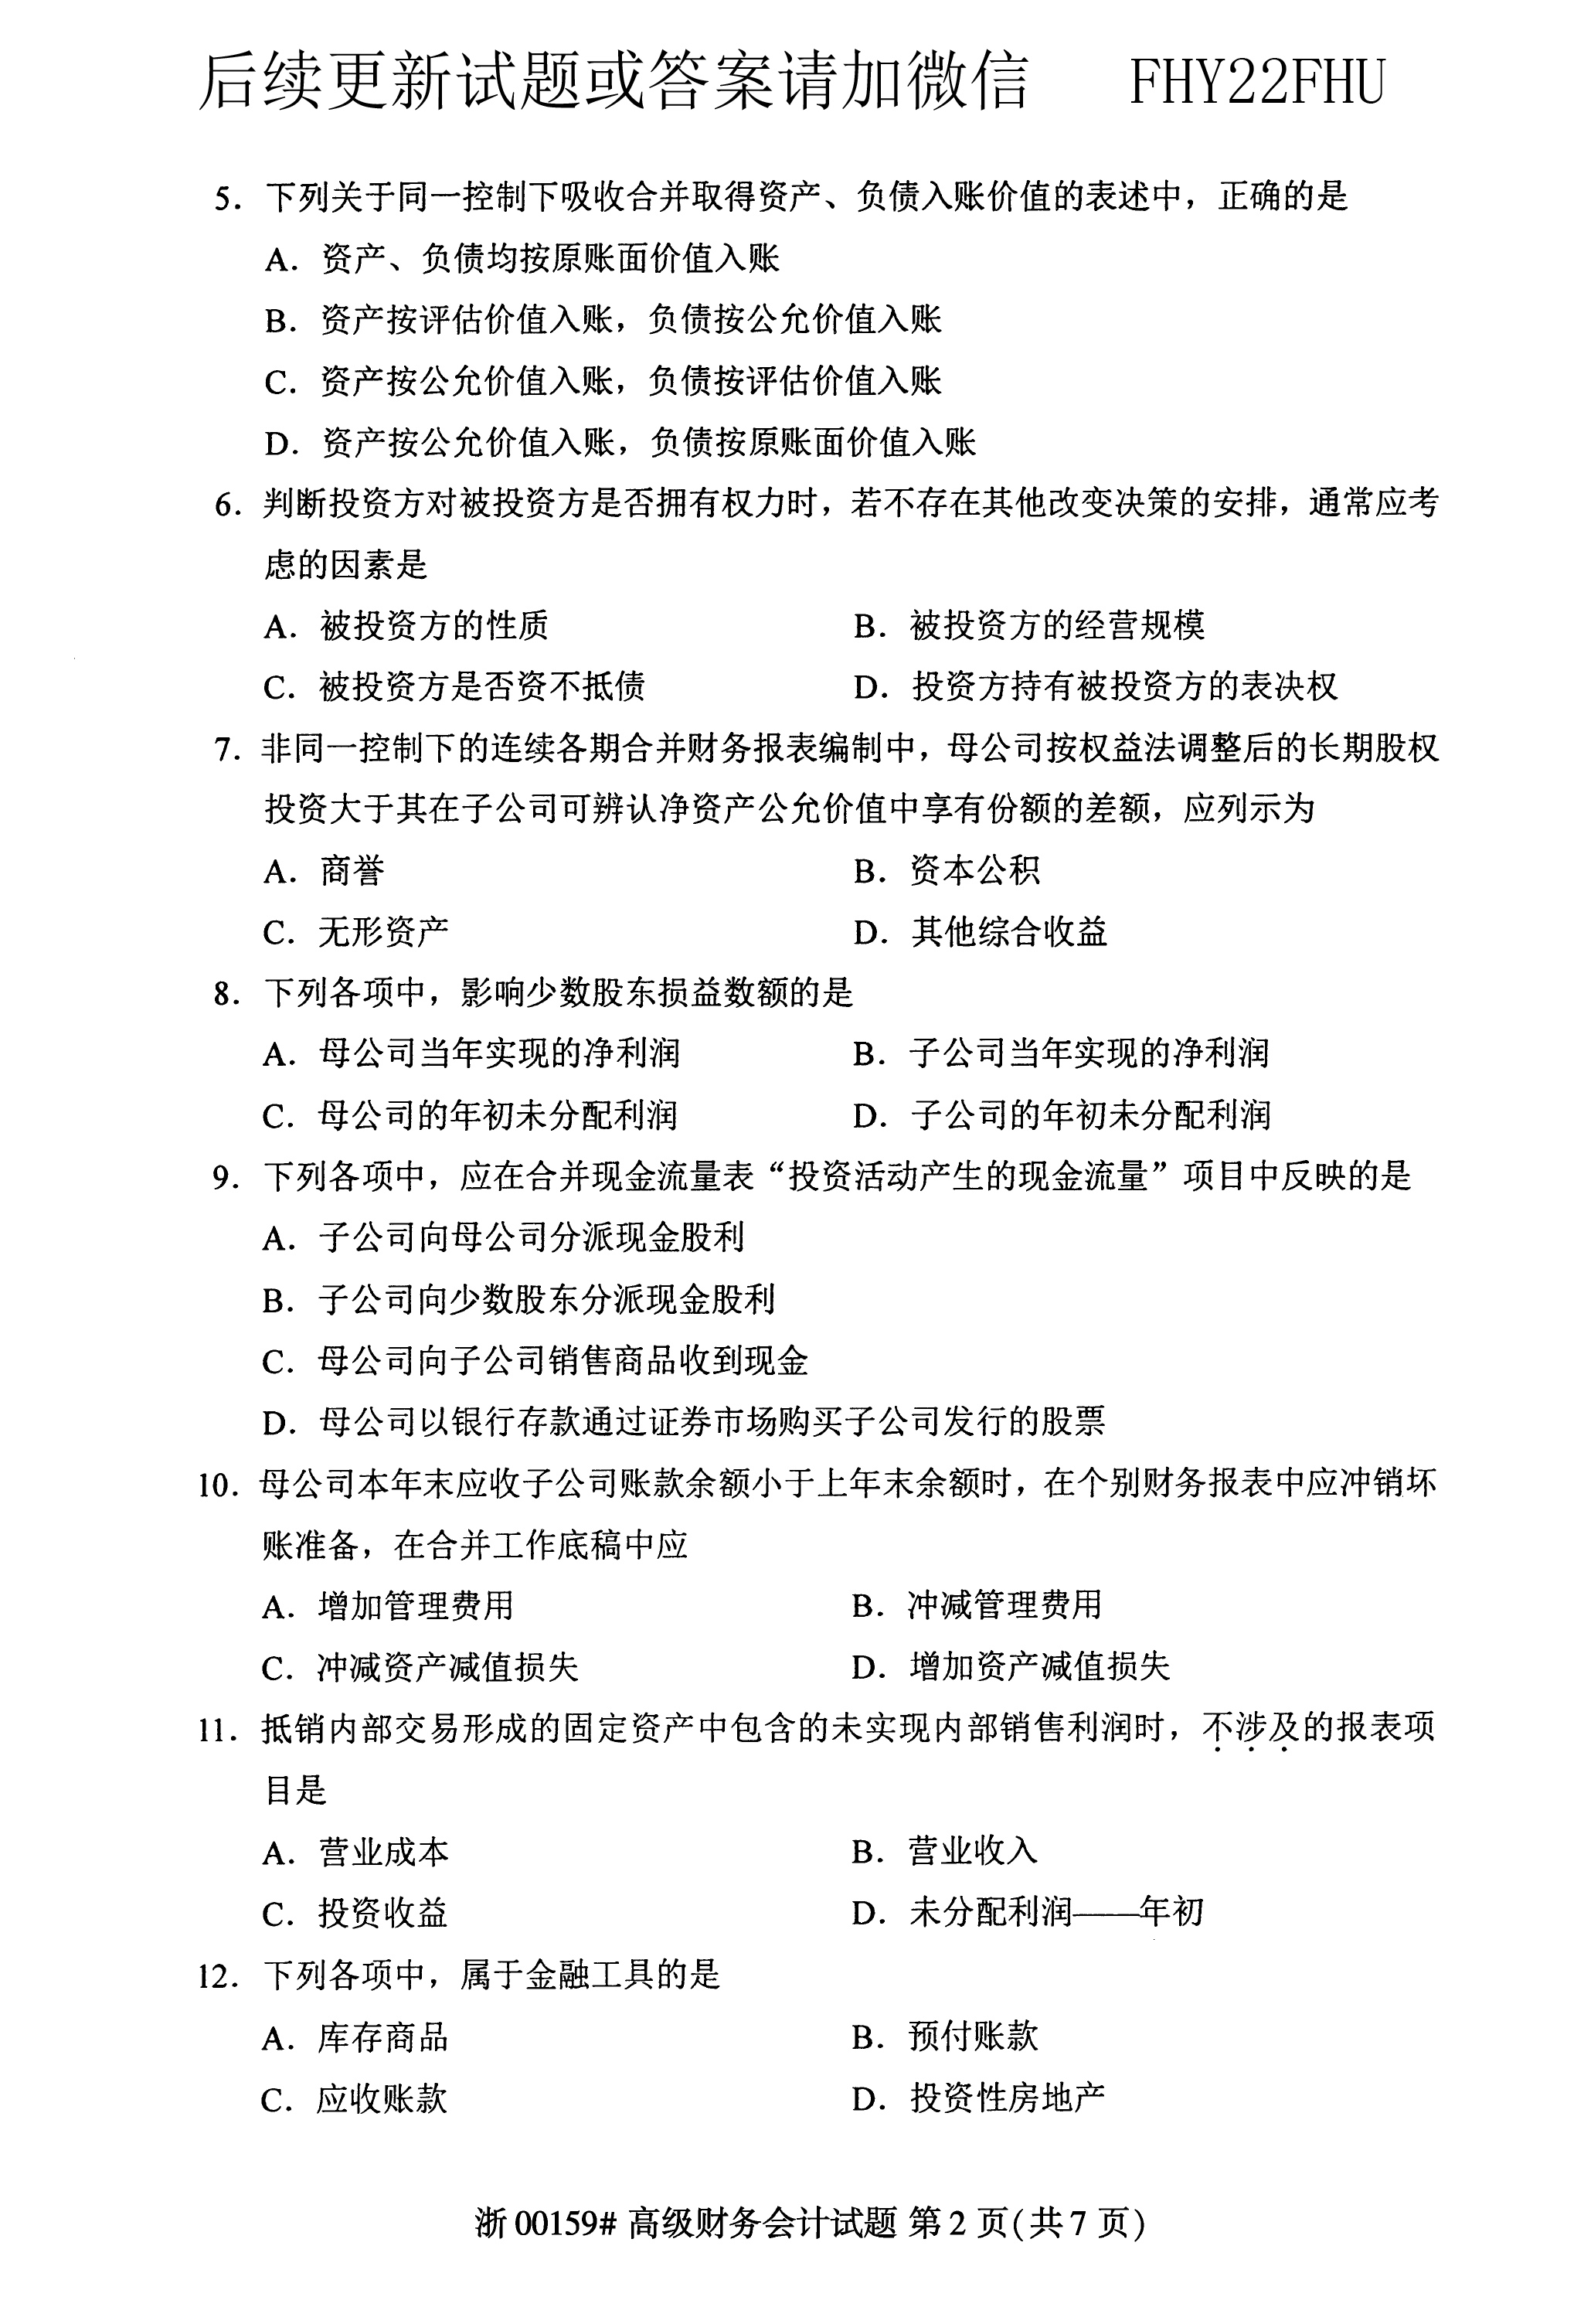 2019年04月贵州省自学考试00159真题及答案